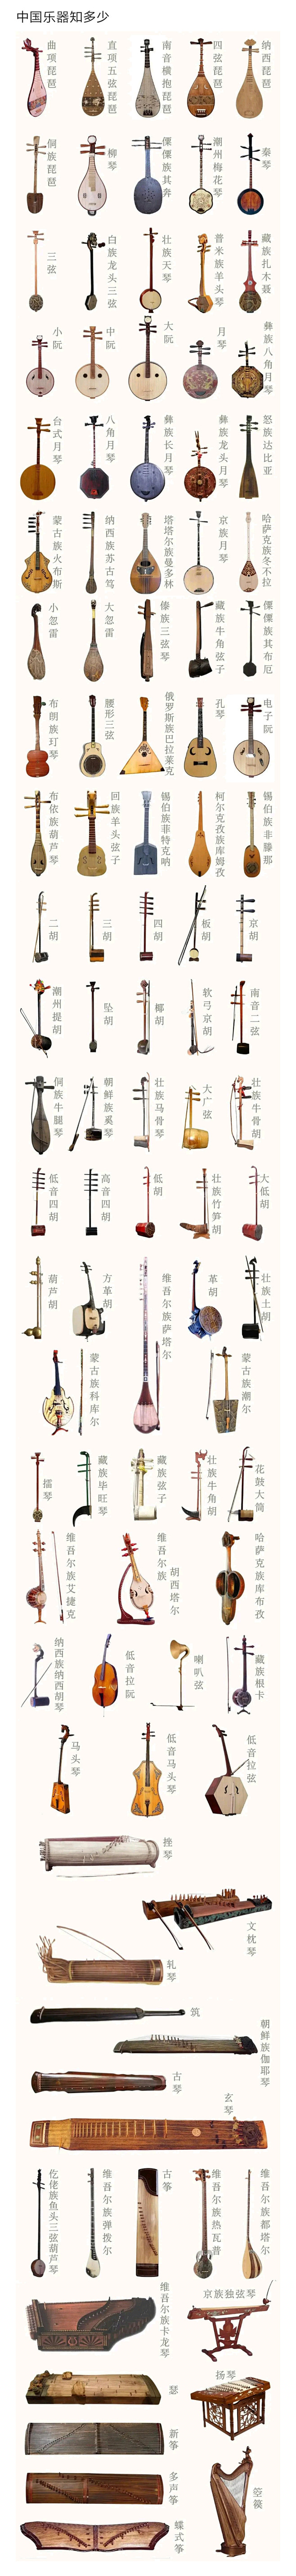 中国乐器百科